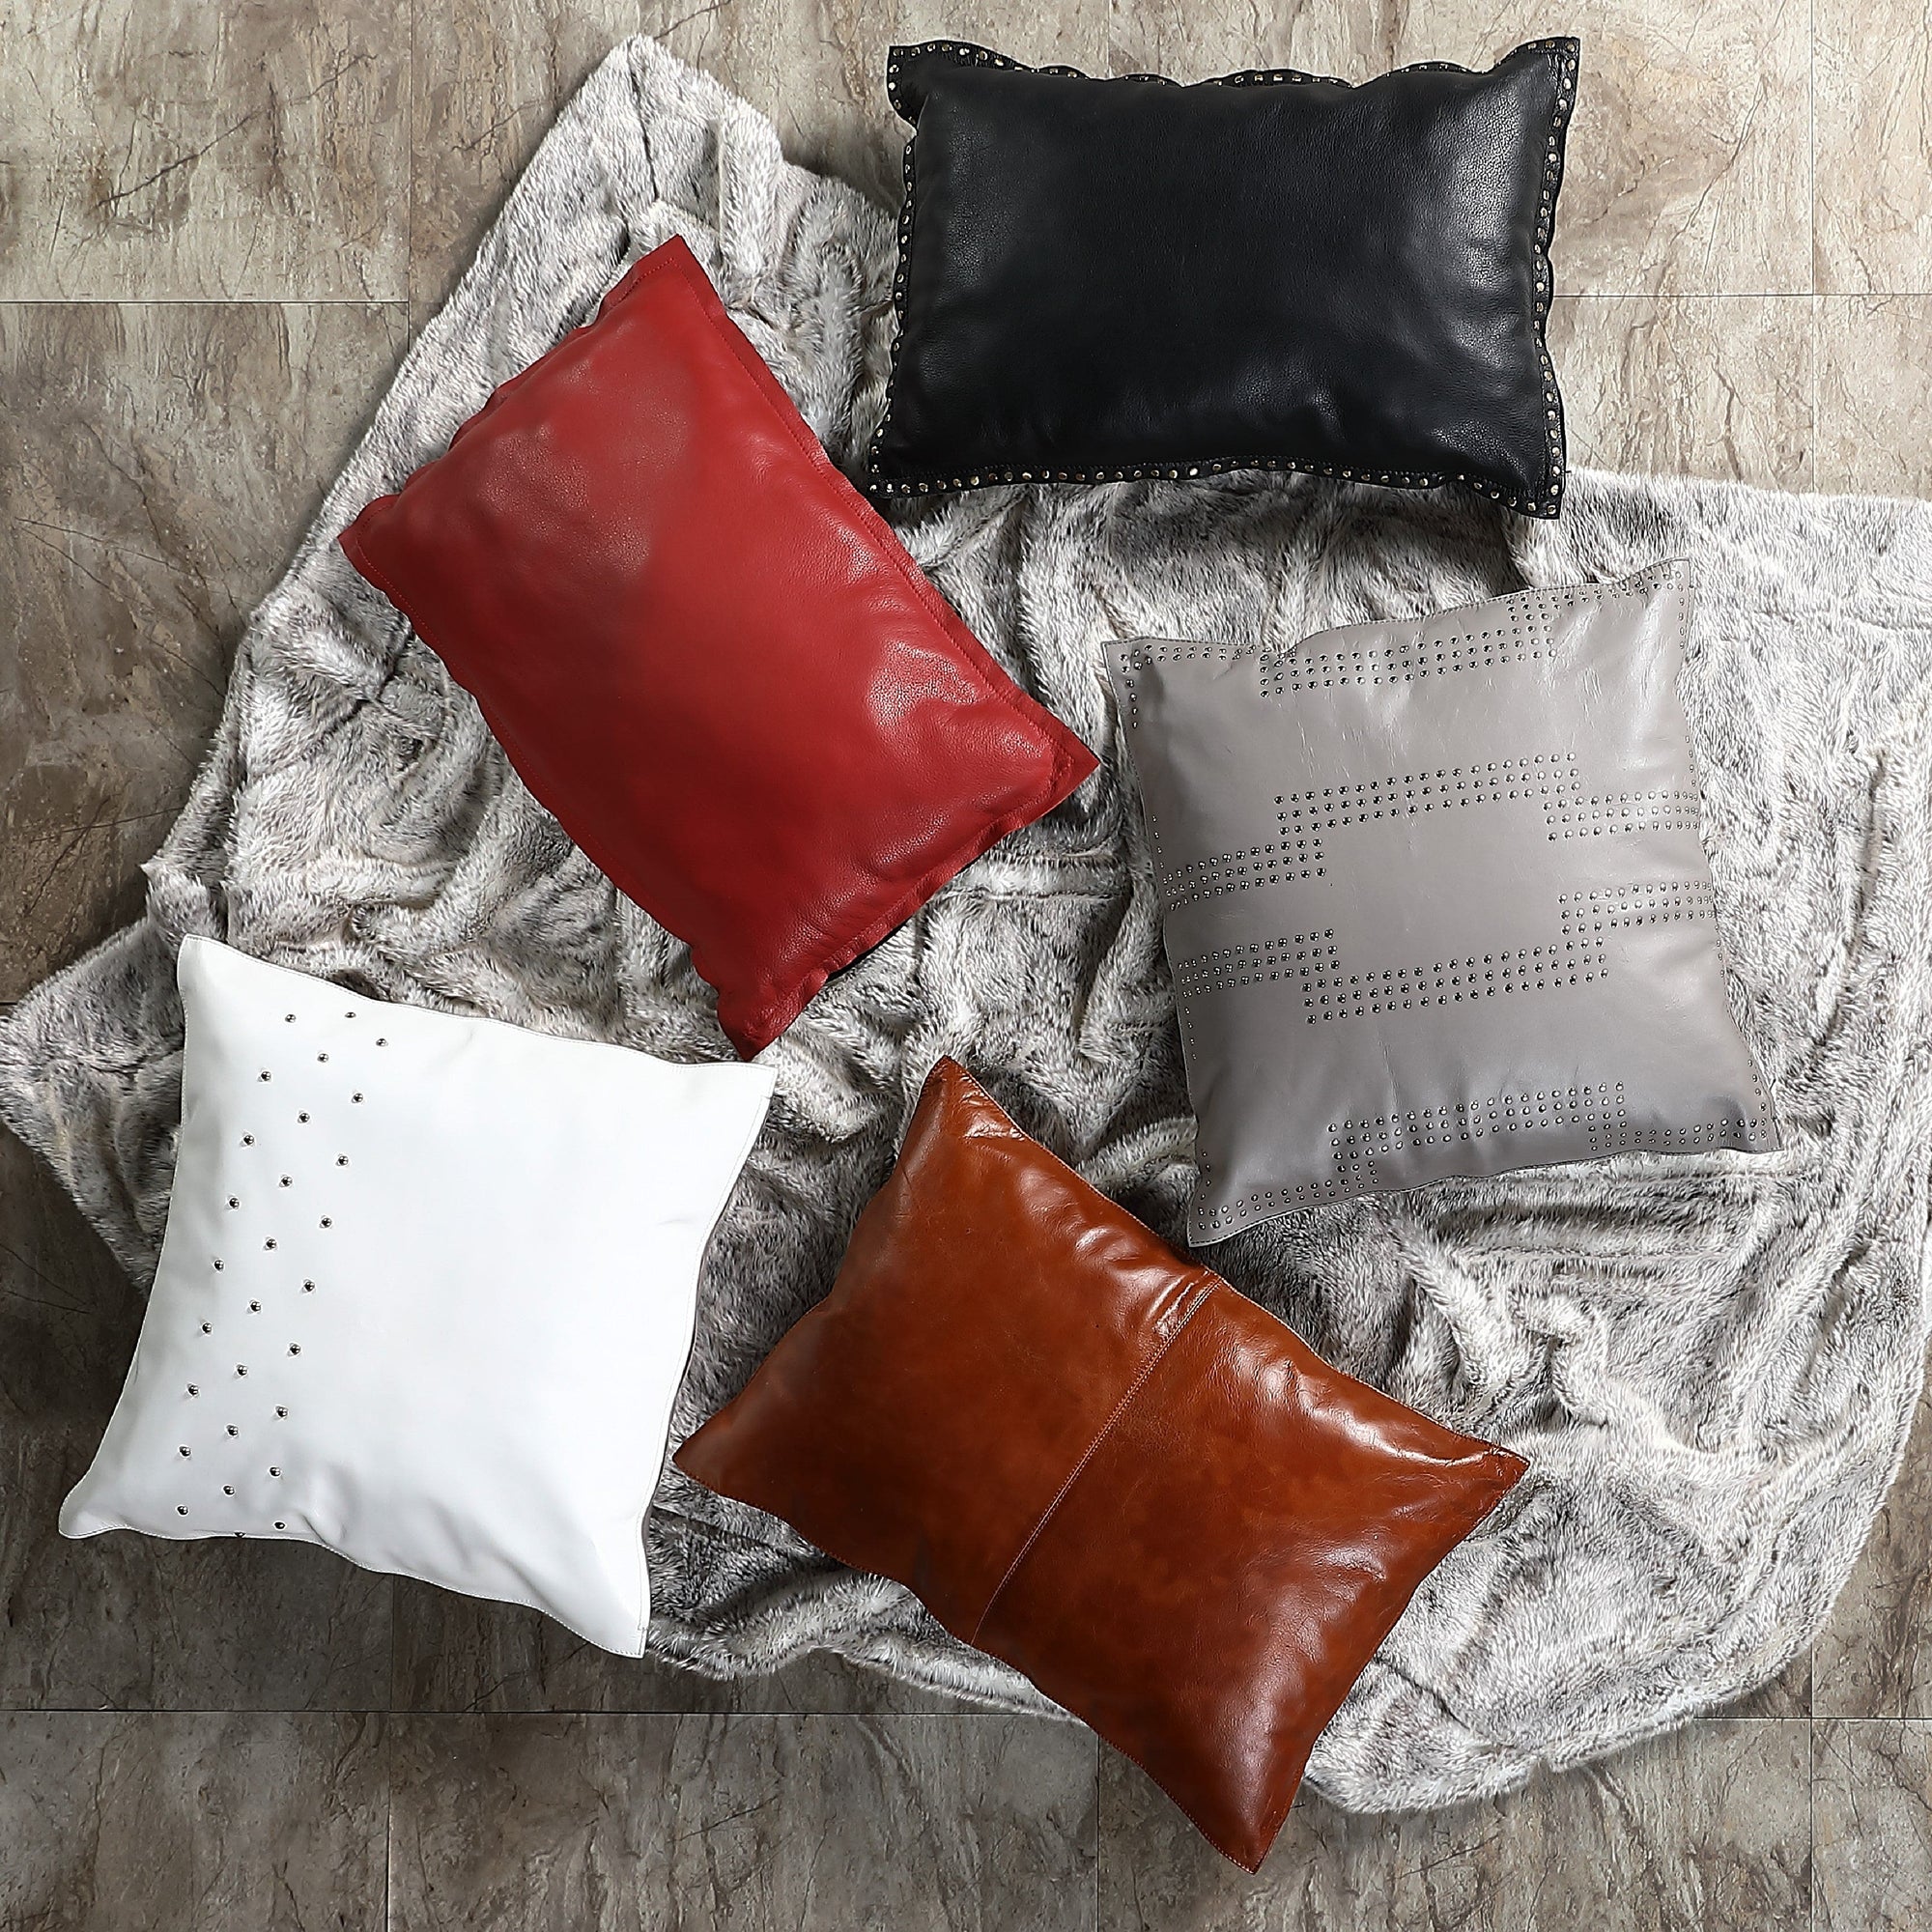 Leather Lumbar Pillow, Lumbar Couch Pillow